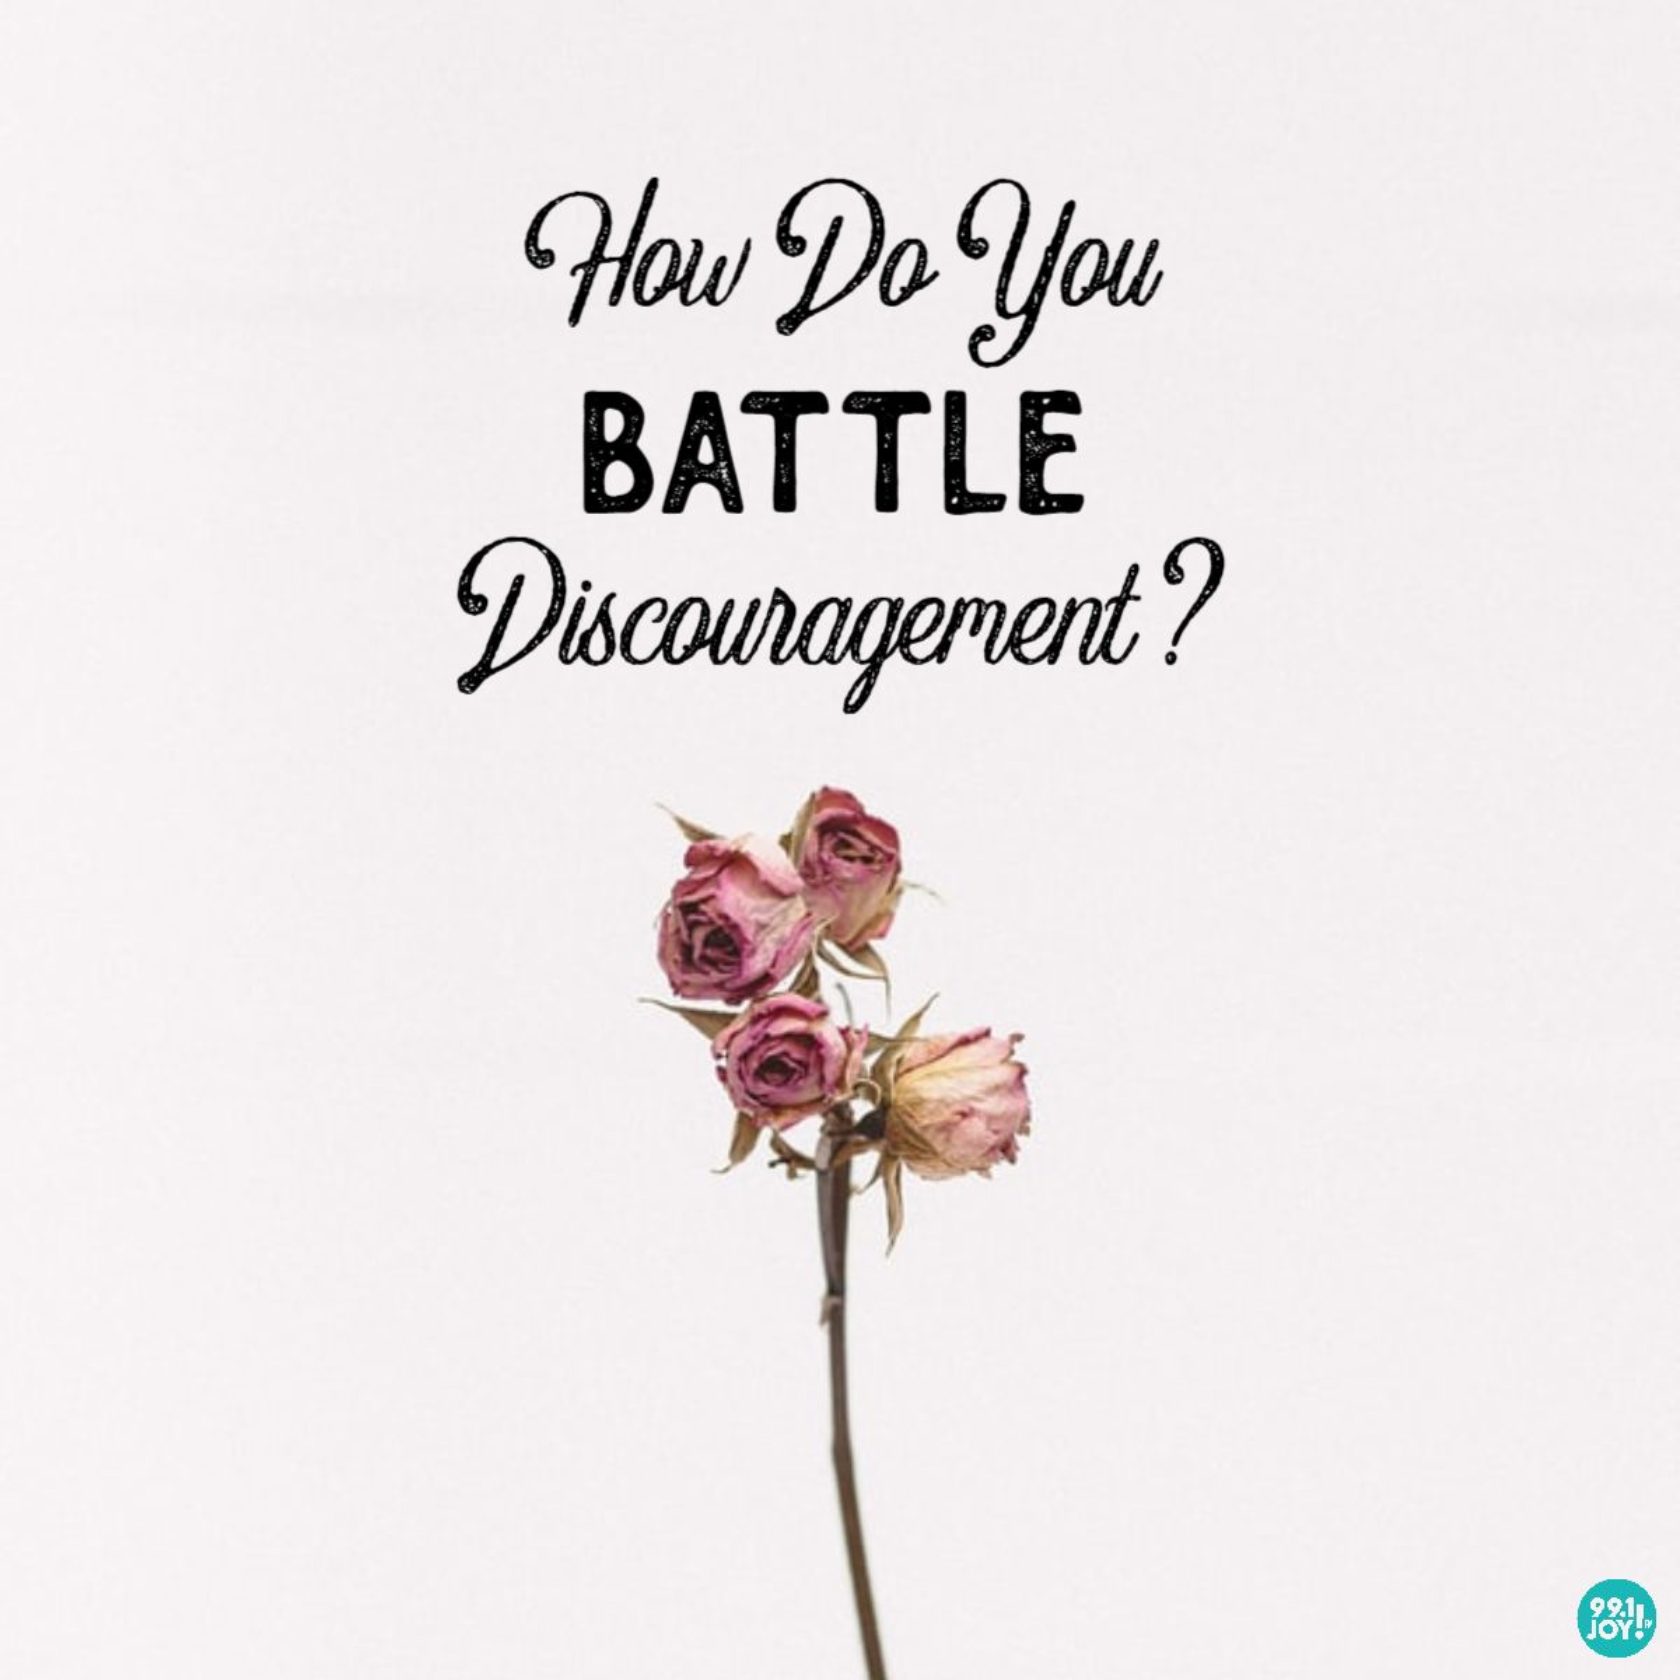 How Do You Battle Discouragement?